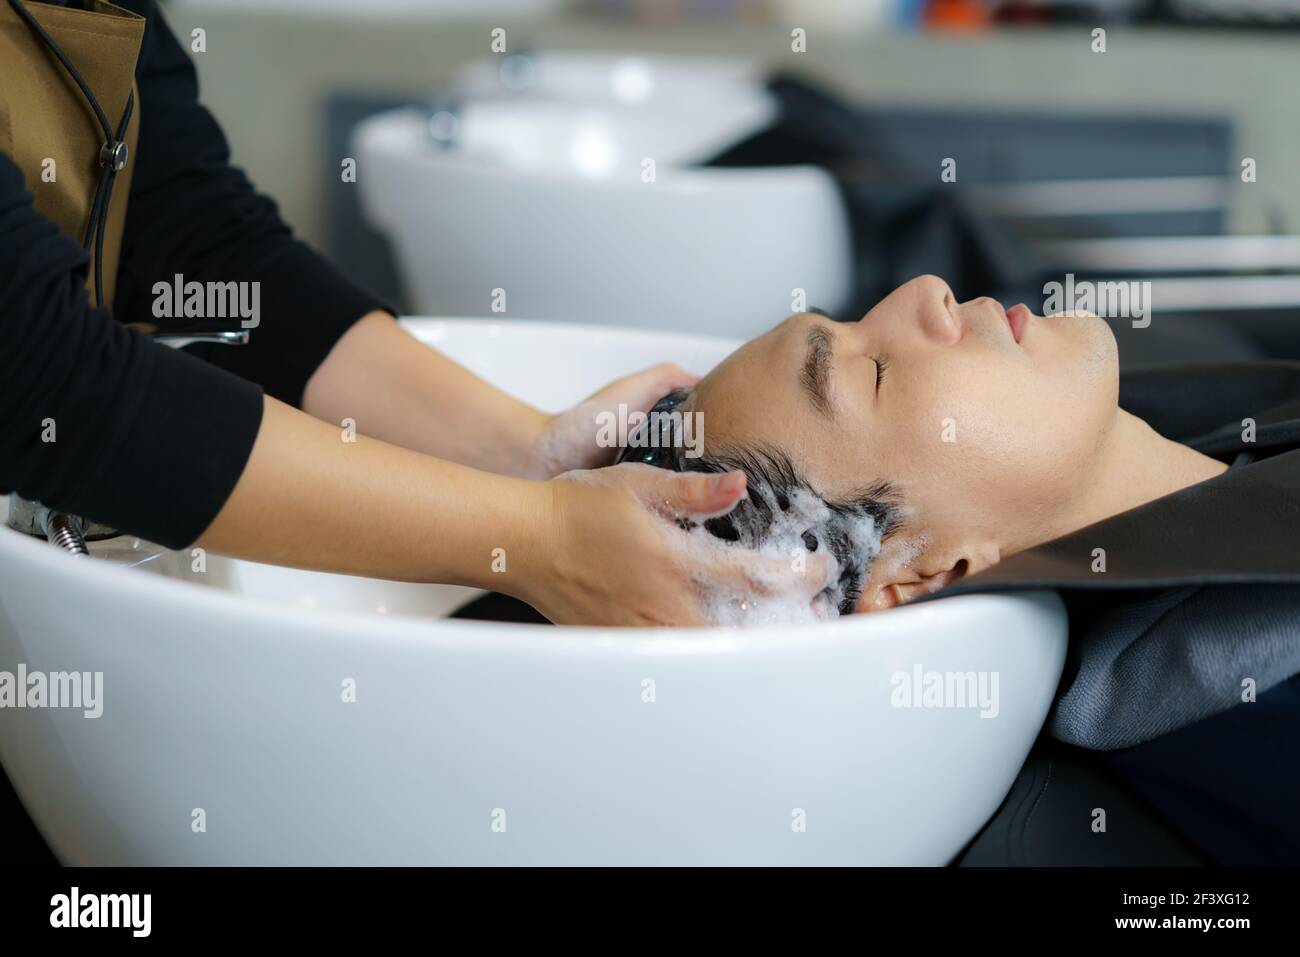 Il parrucchiere sta applicando lo shampoo e massaggiando i capelli di un cliente. L'uomo che ha i suoi capelli lavati in un parrucchiere. Foto Stock